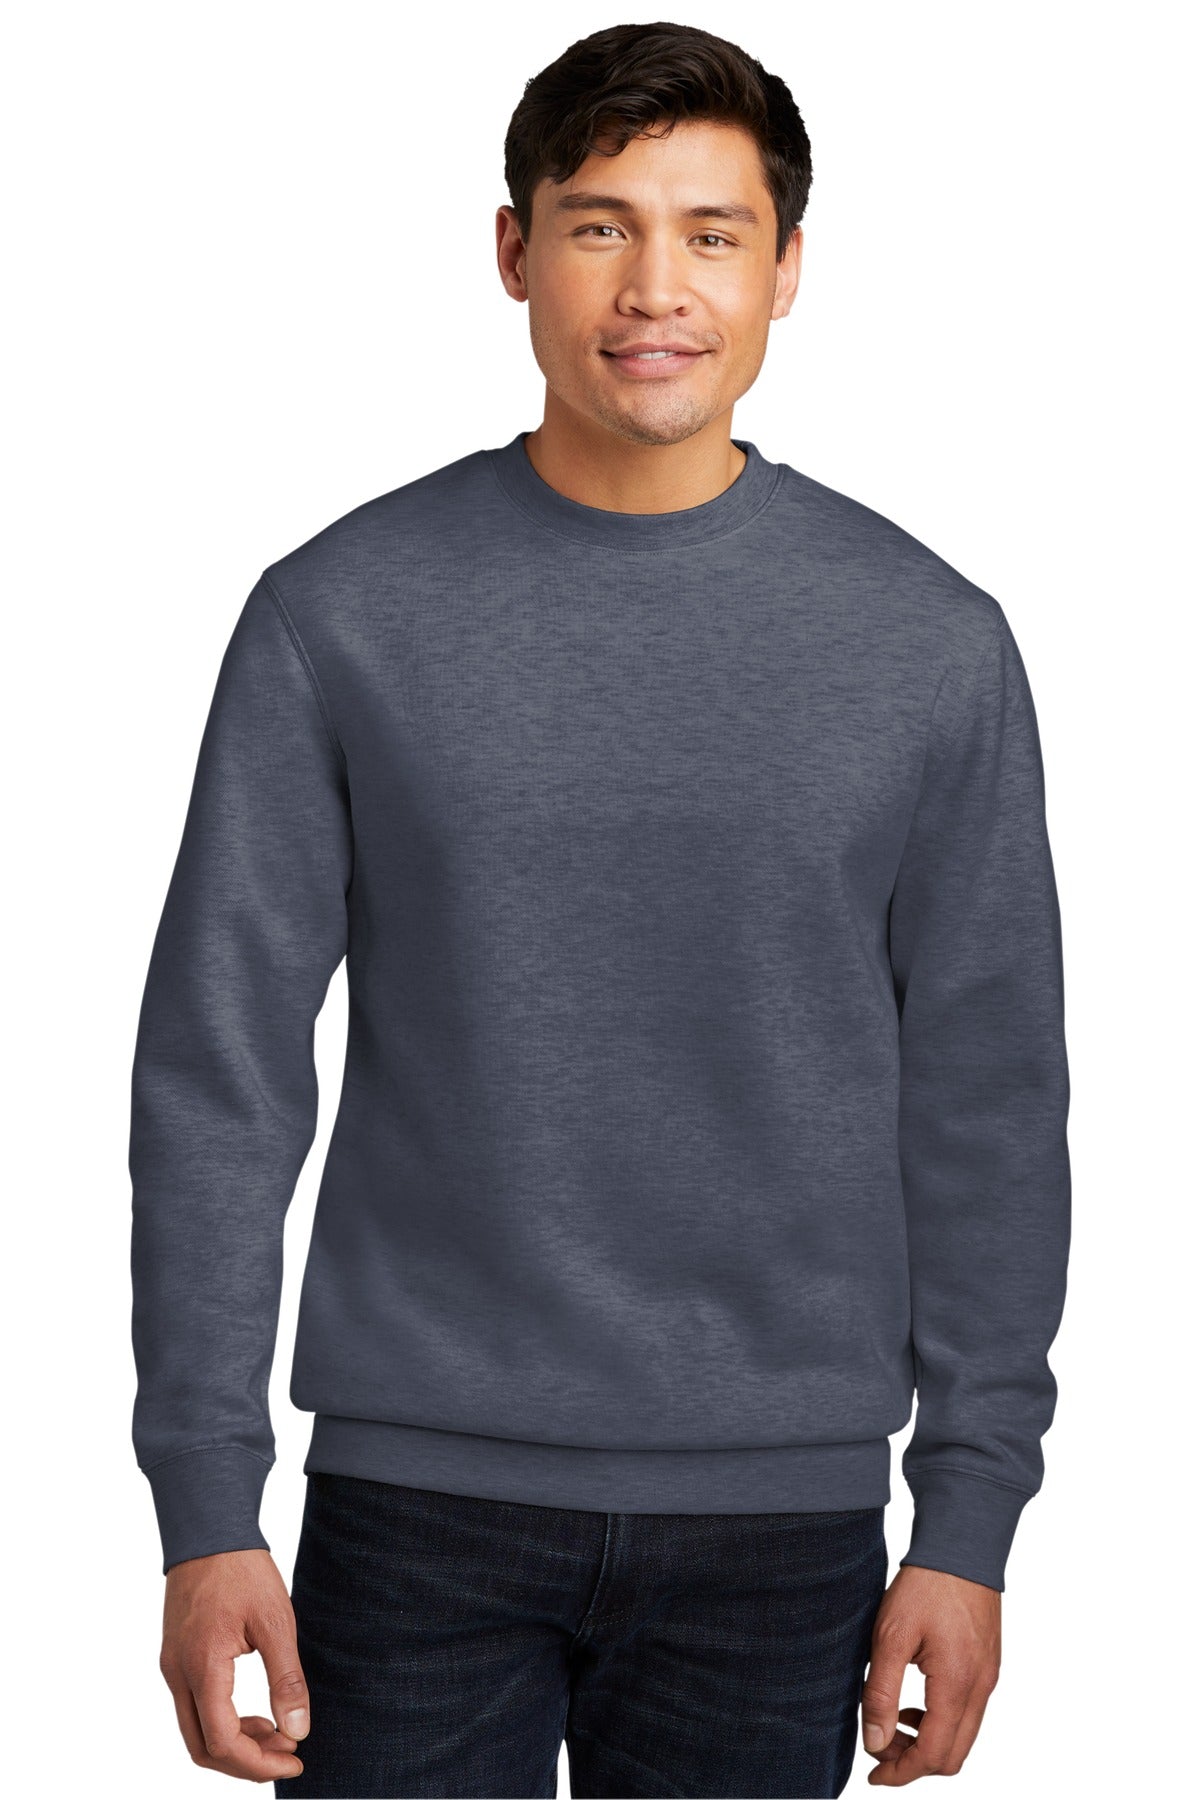 Sweatshirts/Fleece Heathered Navy District